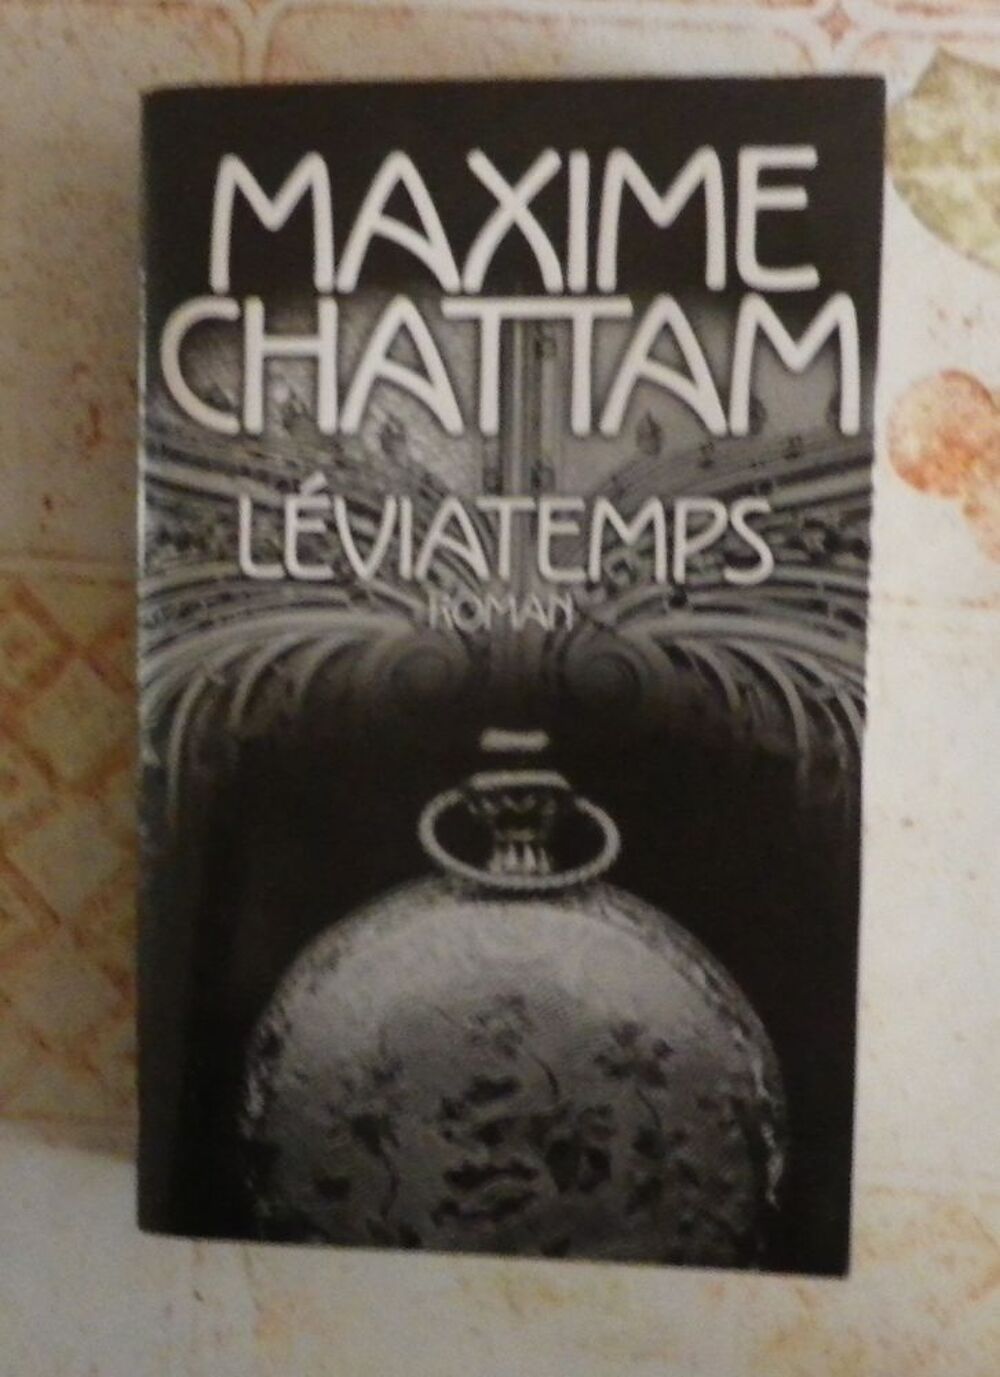 LEVIATEMPS de Maxime CHATTAM France Loisirs Livres et BD